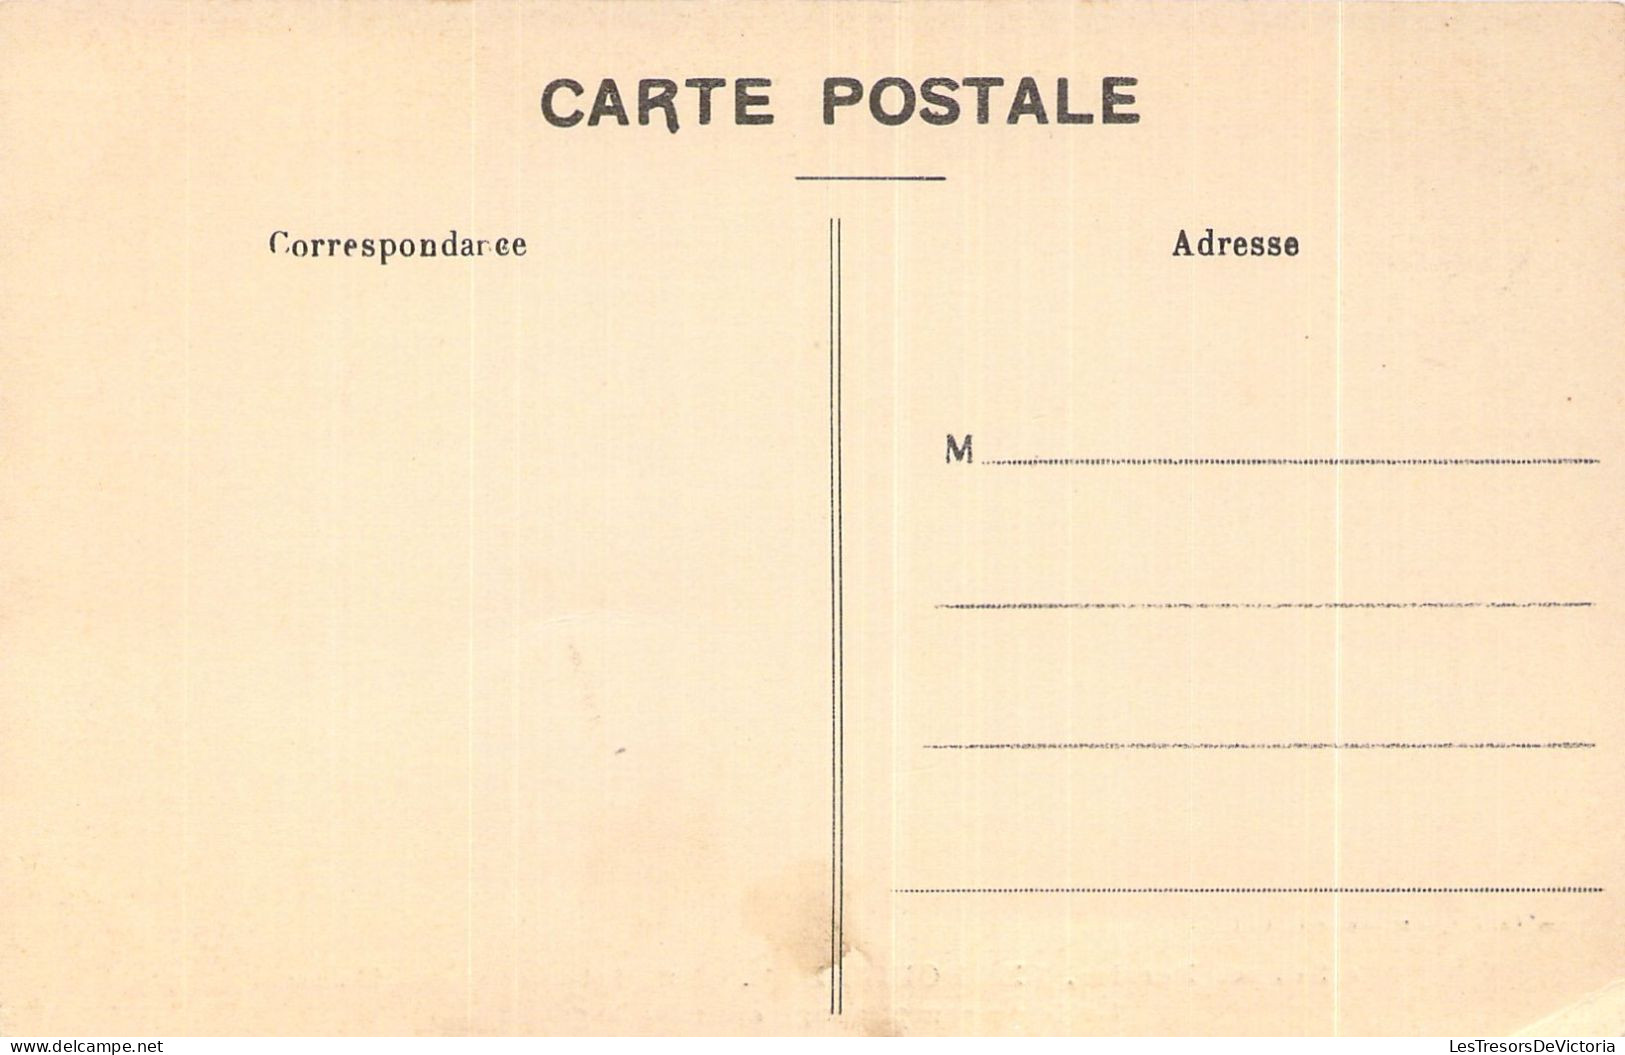 FRANCE - 30 - La Source Perrier - LES BOUILLENS - Salle De Remplissage Et Emballage  - Carte Postale Ancienne - Other & Unclassified